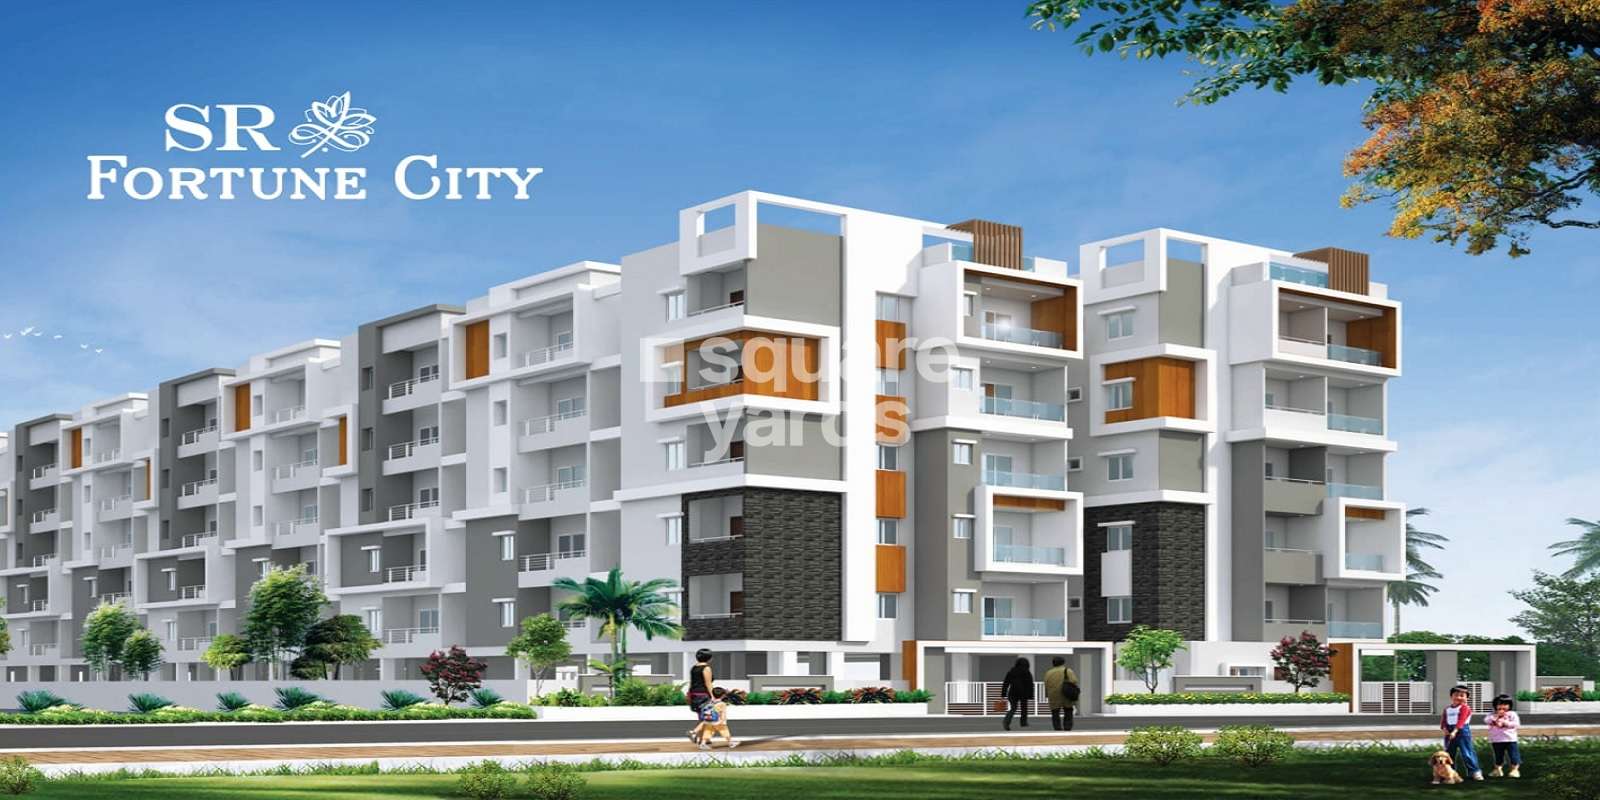 Sri SR Fortune City Cover Image